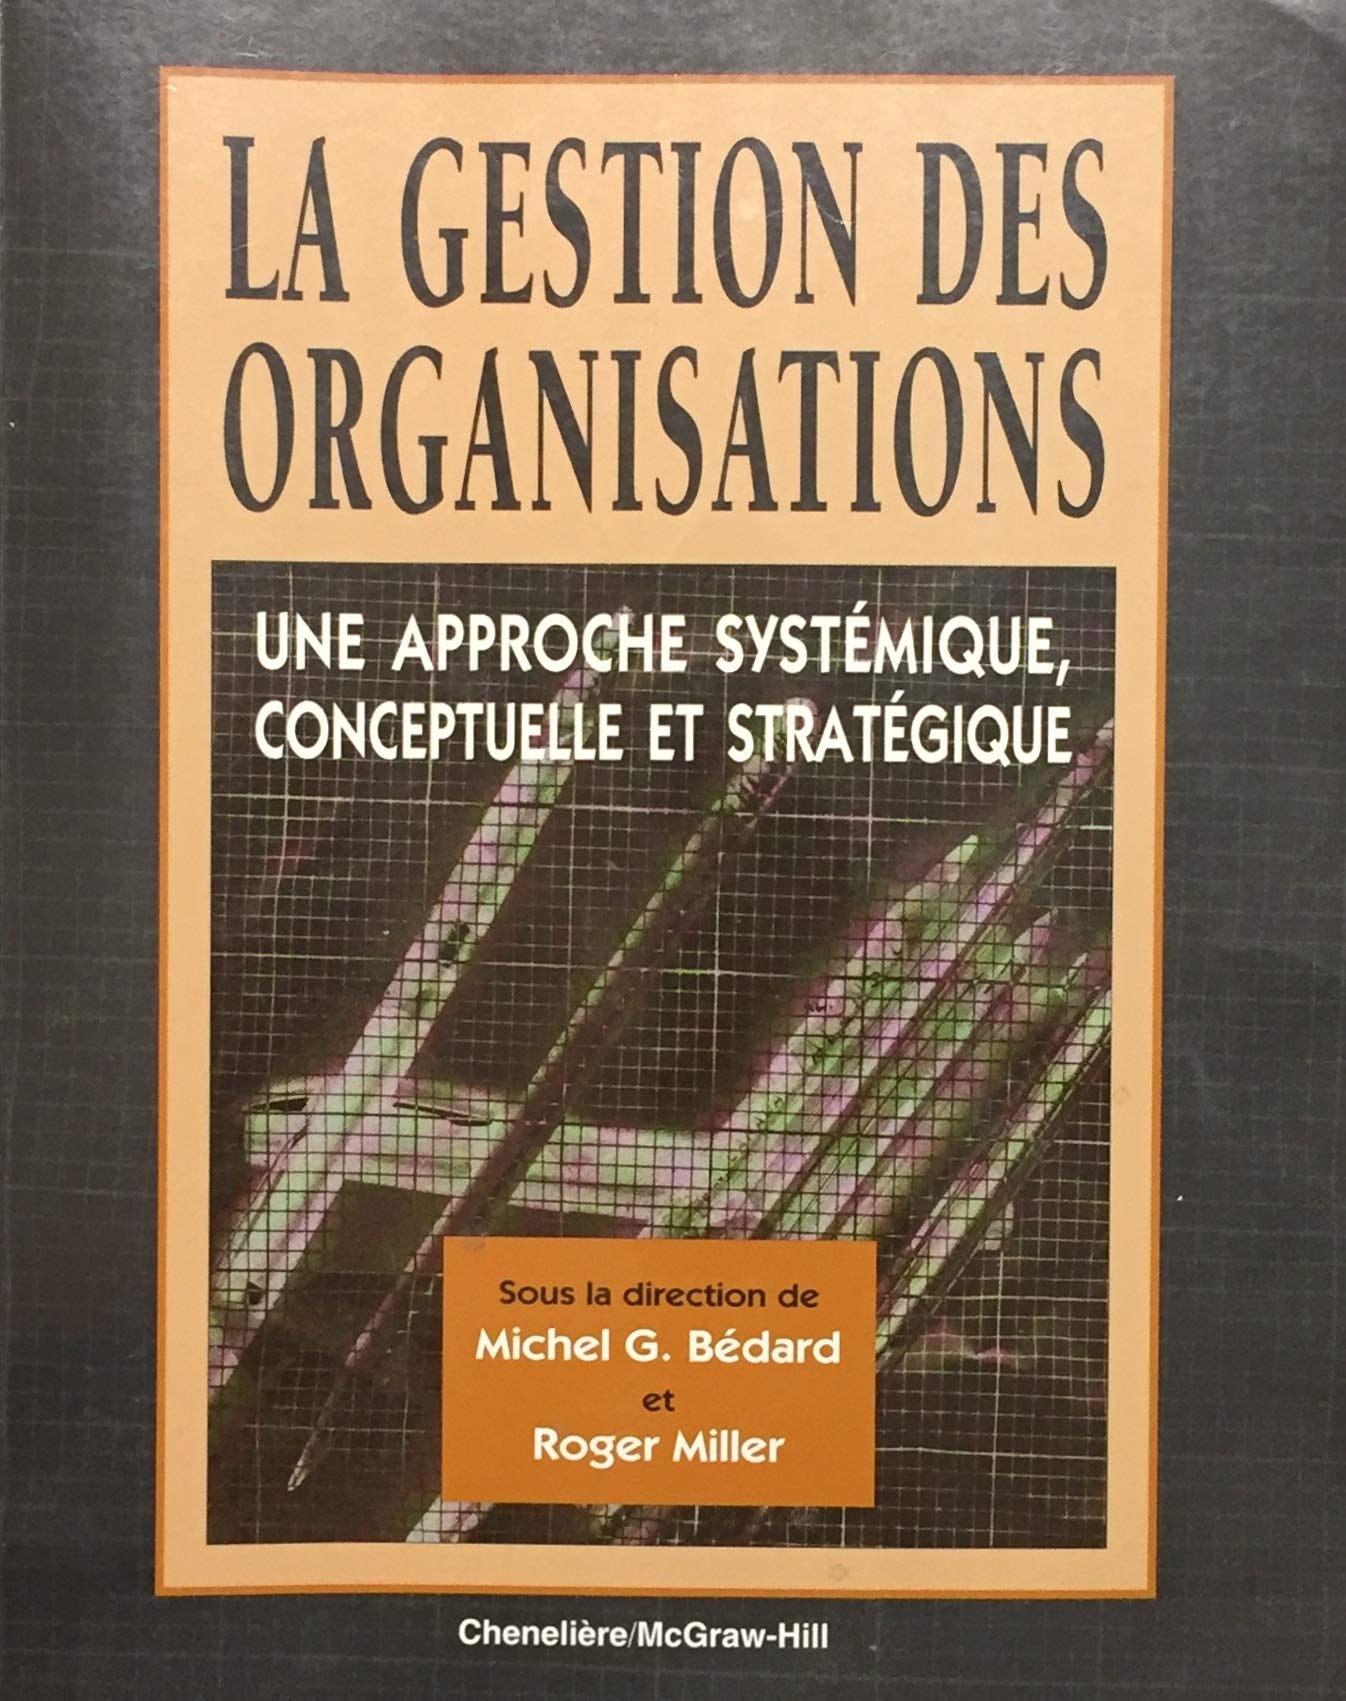 Livre ISBN 2894610025 La gestion des organisations : Une approche systémique, cenceptuelle et stratégique (Michel G. Bédard)